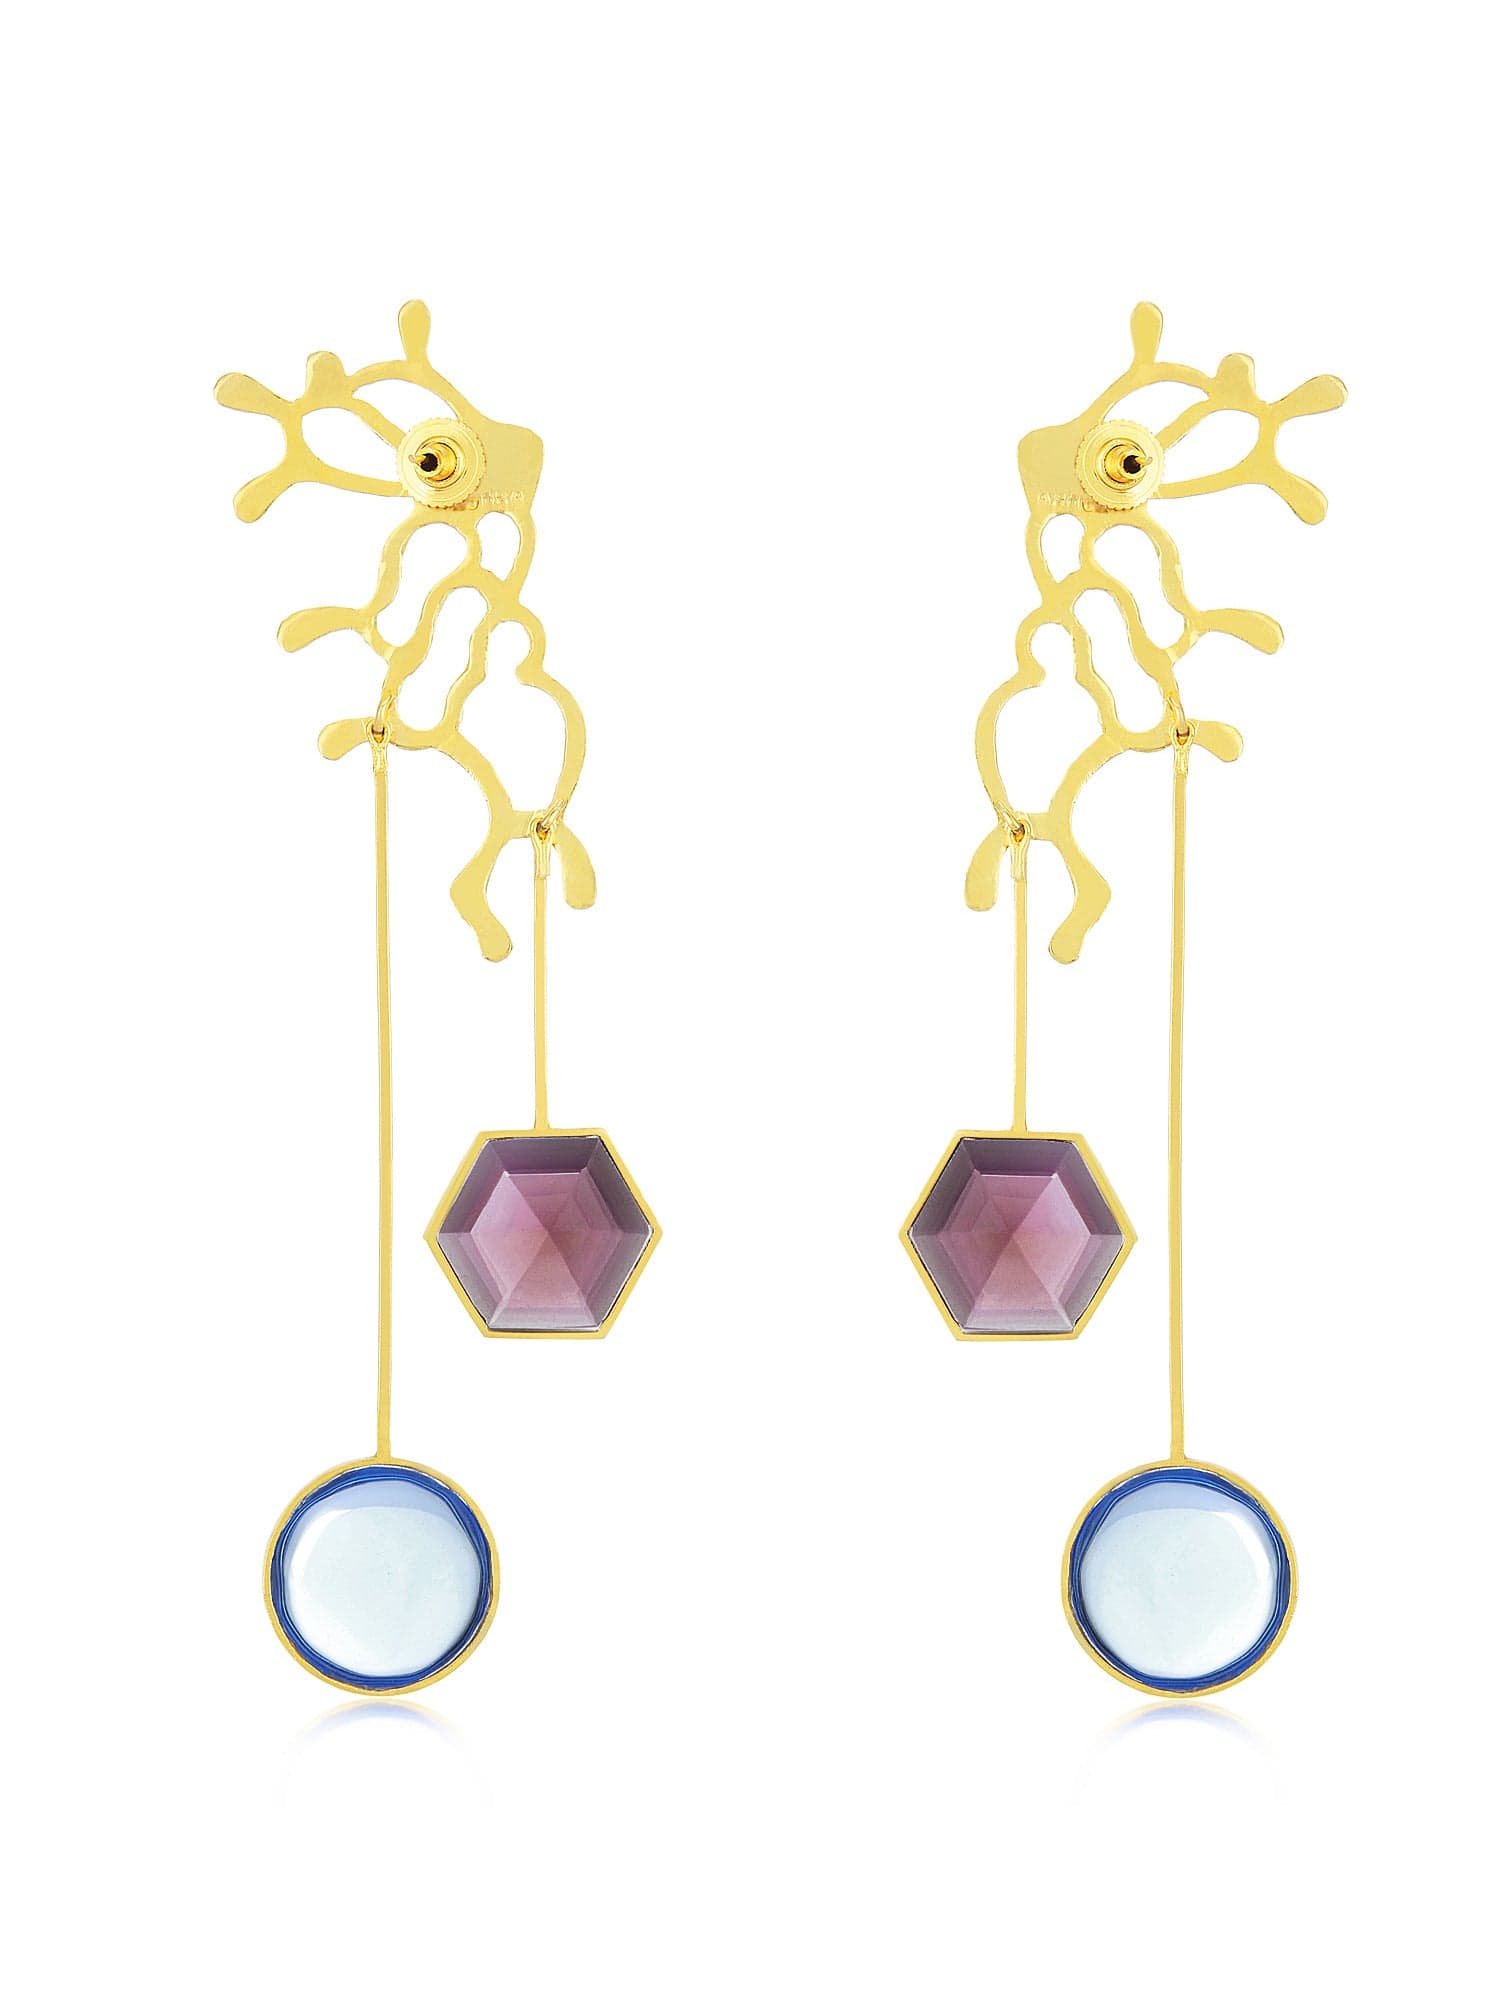 Coraline earrings